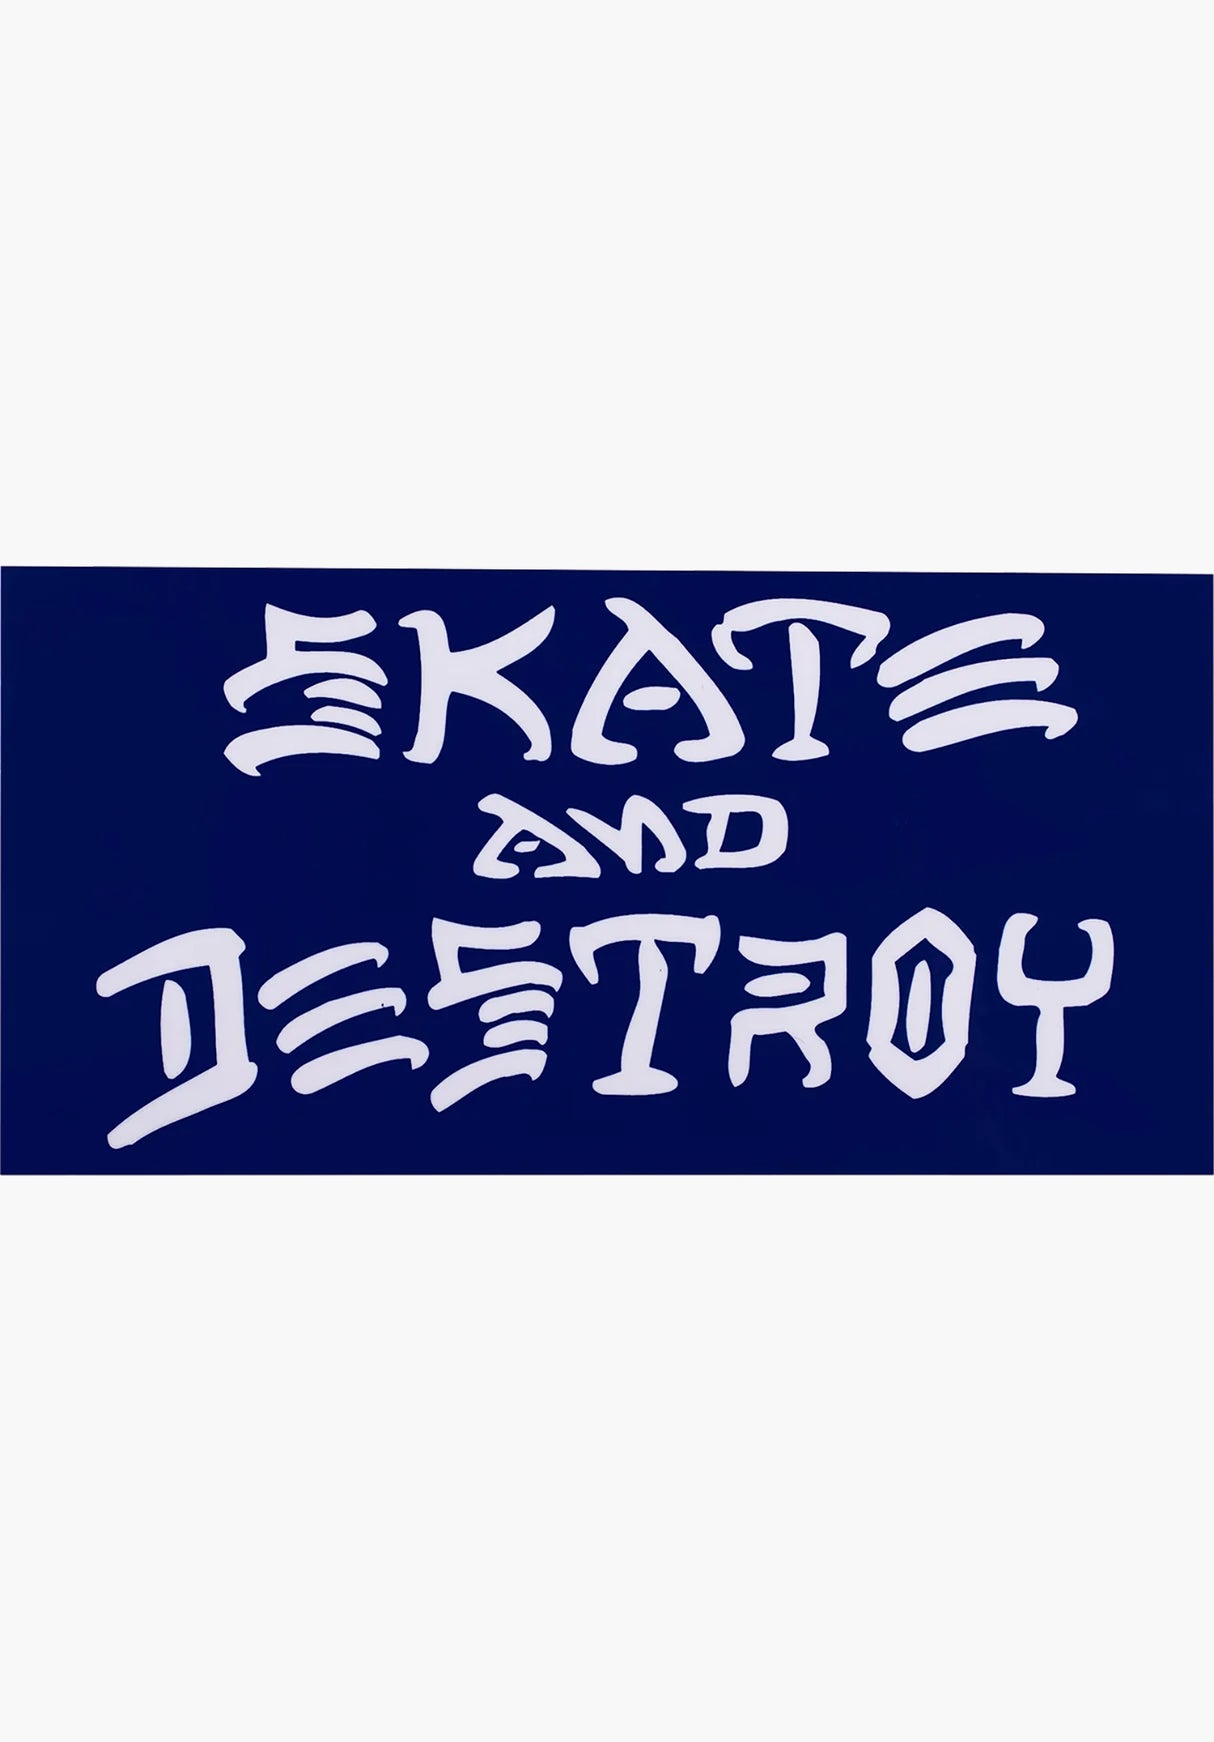 Skate & Destroy Sticker Large blue Vorderansicht